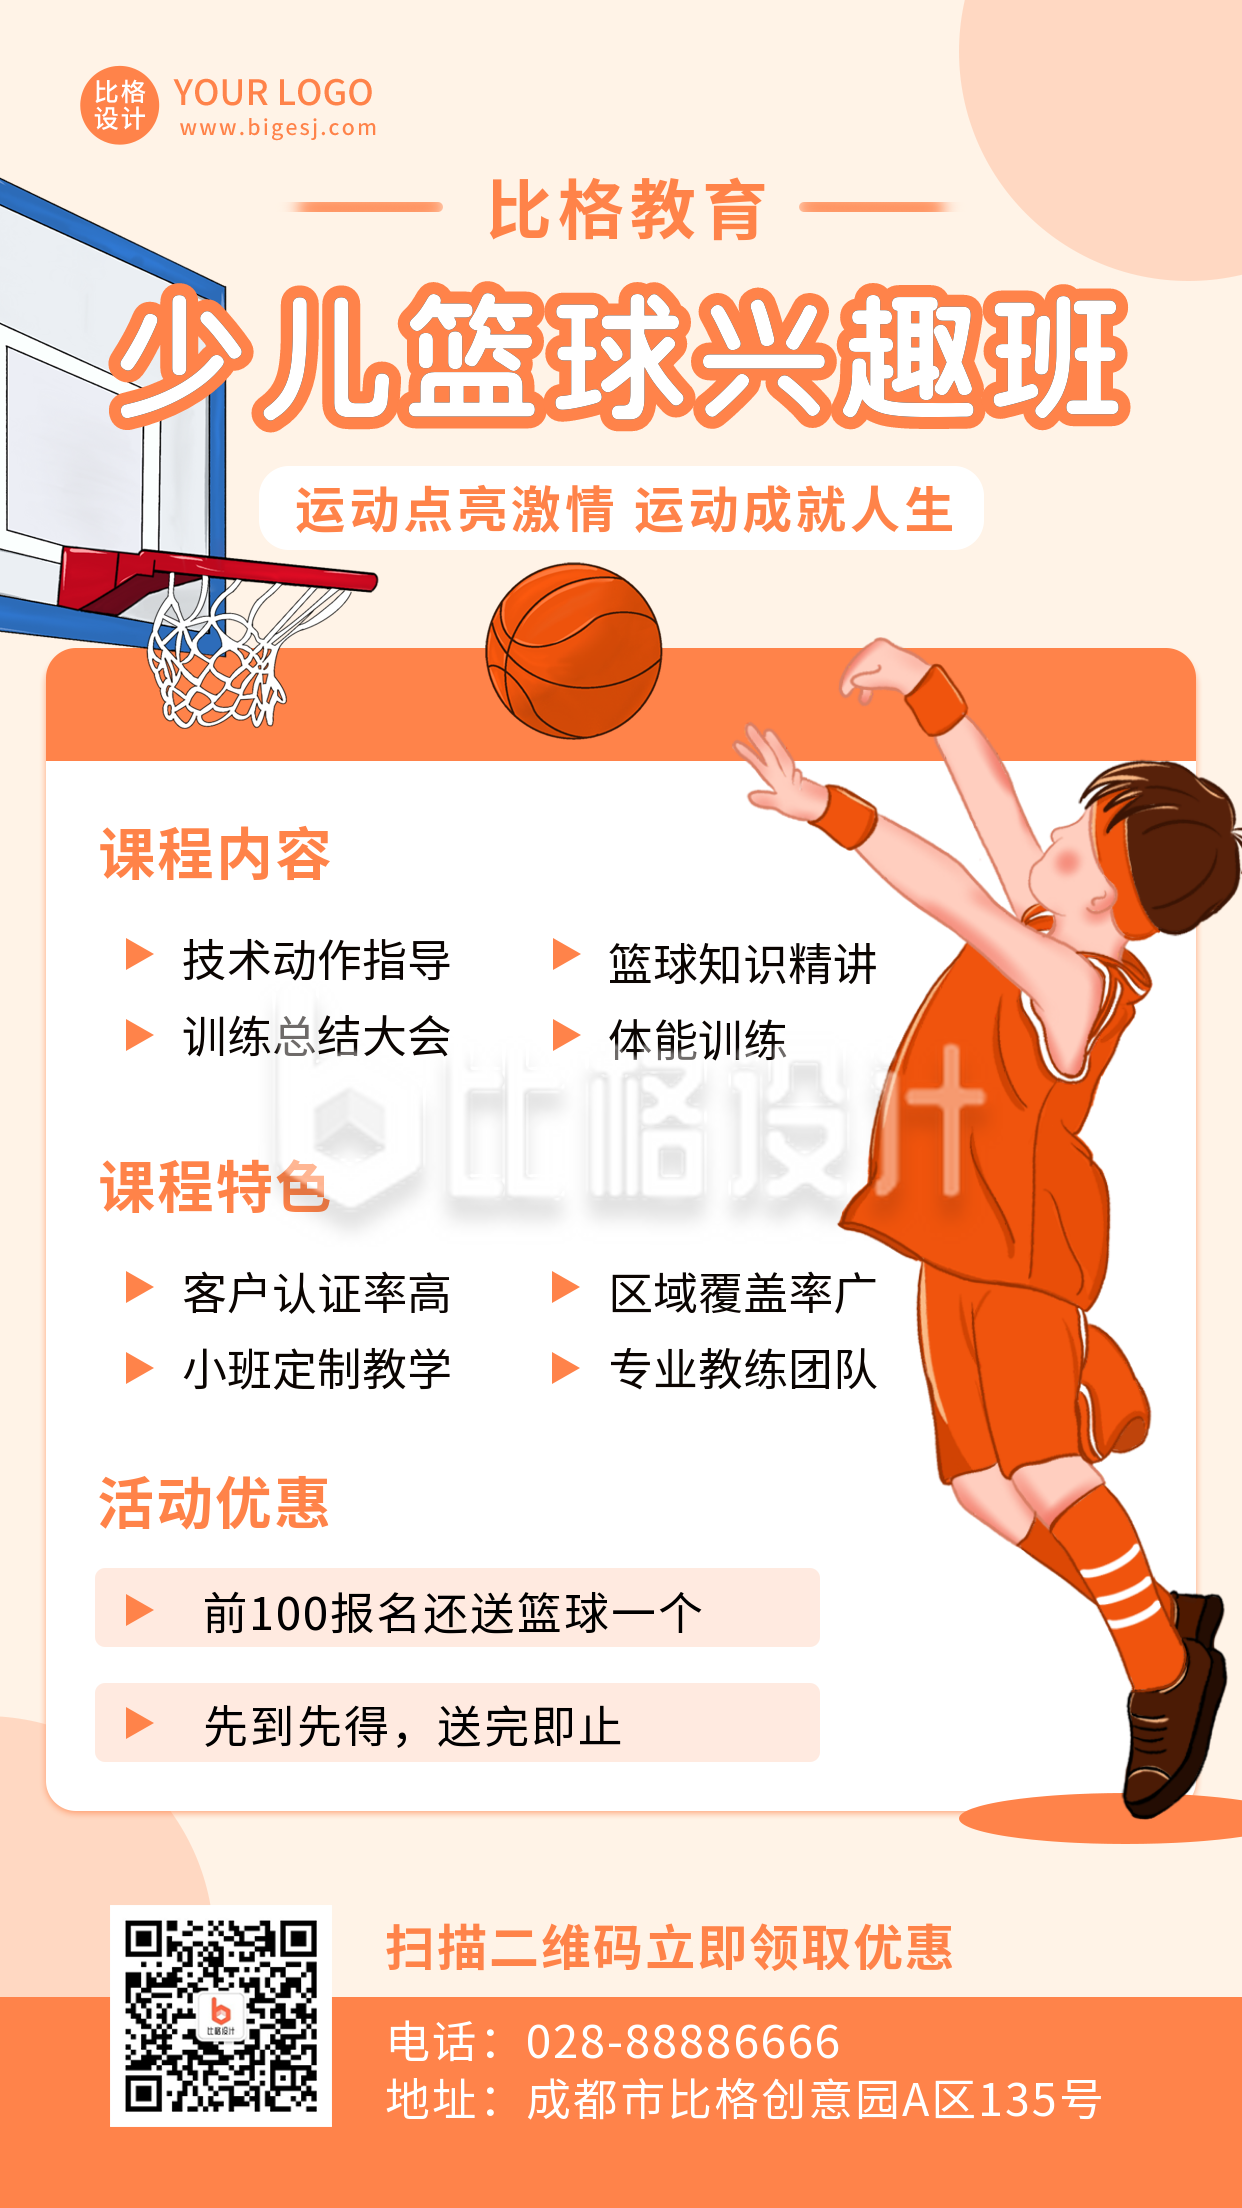 少儿运动篮球兴趣班招生培训比赛橙色手绘手机海报